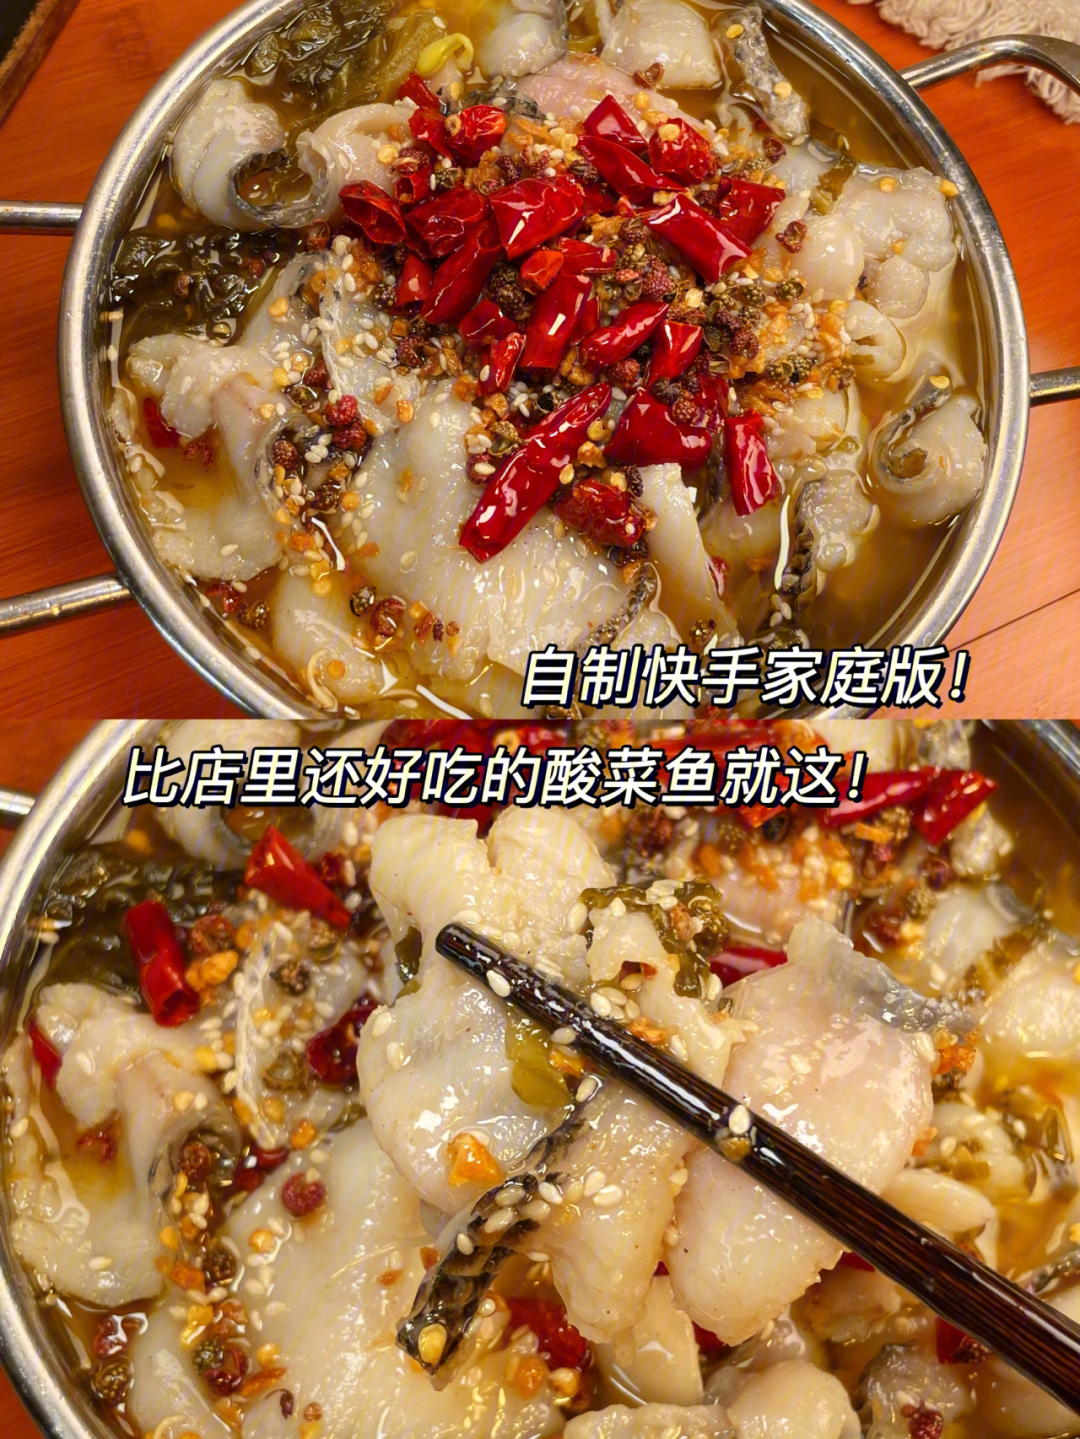 绝绝子7815食材:老坛酸菜鱼一盒,金针菇,豆芽(也